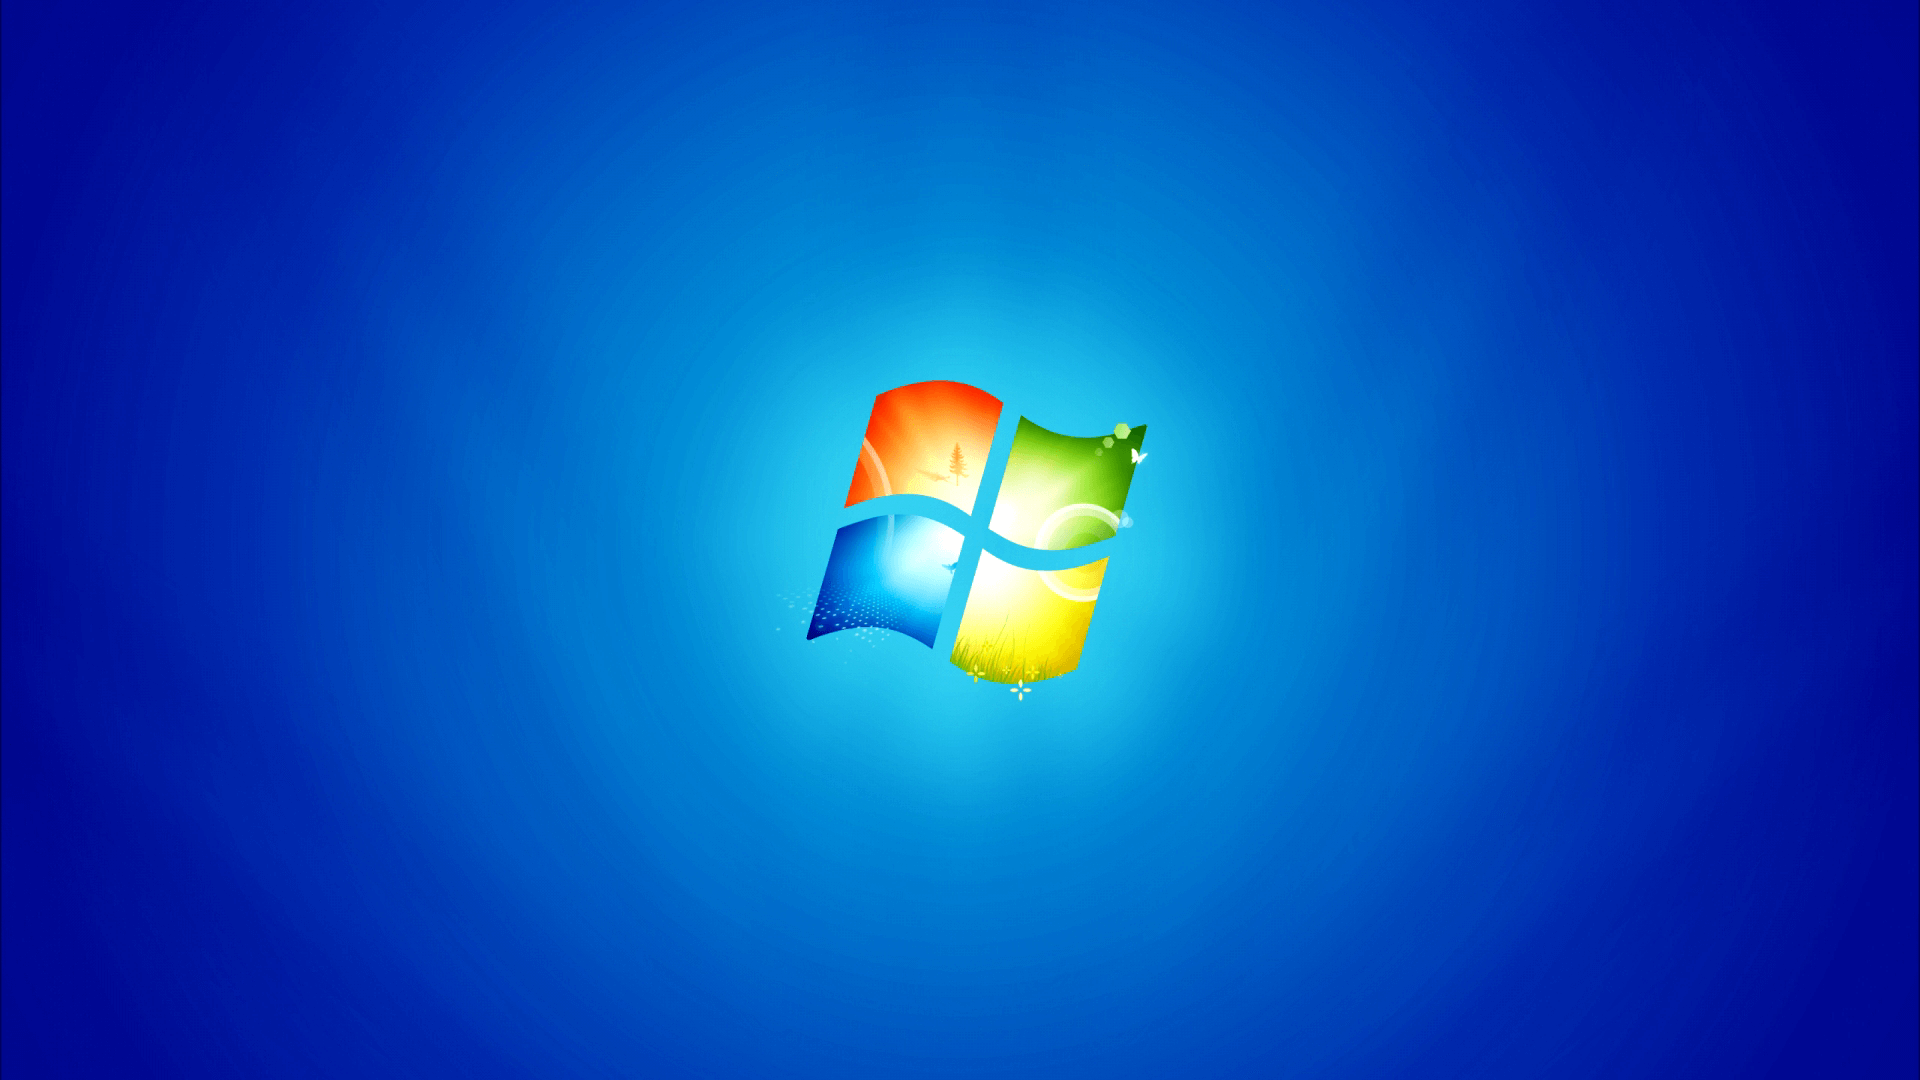 Windows 7 все еще популярна и занимает крупную долю рынка ПК